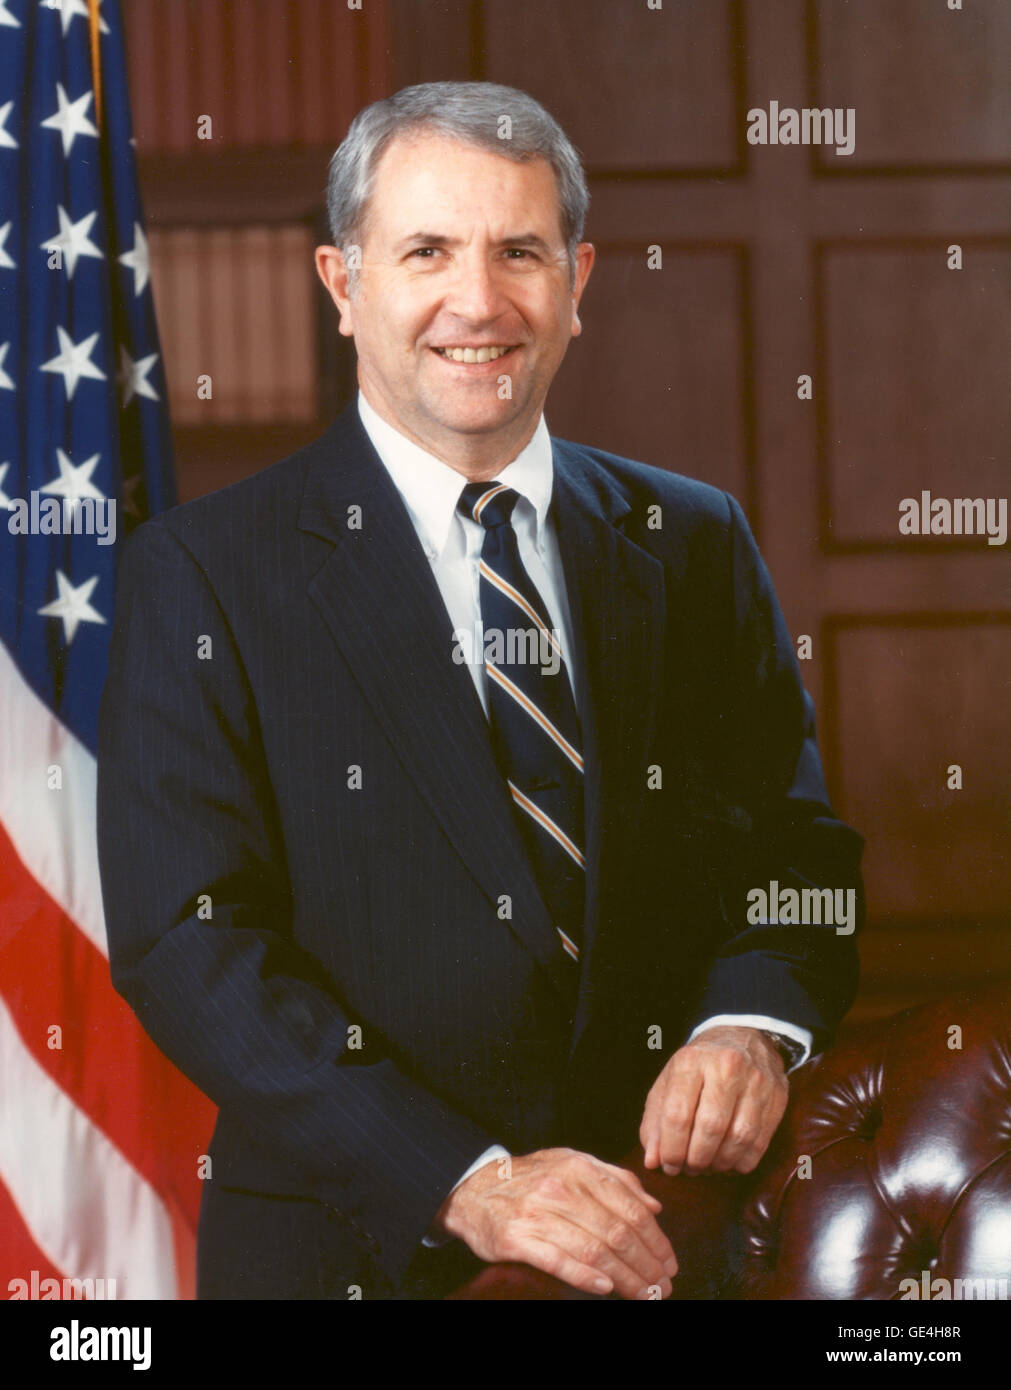 Vice Ammiraglio Richard H. veramente servito come NASA ottavo amministratore dal 14 maggio 1989 al 31 marzo 1992. Prima di diventare amministratore, veramente servito come NASA associare amministratore per il volo spaziale. In questa posizione, ha portato la minuziosa ricostruzione del programma Space Shuttle dopo l'incidente di Challenger. Veramente la carriera ha cominciato in marina; nel 1965, divenne uno dei primi militari astronauti scelti per la Air Force Manned Orbiting Laboratory programma in Los Angeles, California. Egli ha trasferito alla NASA come un astronauta in agosto 1969 poi servito come capsule communicator per tutti e tre i Foto Stock